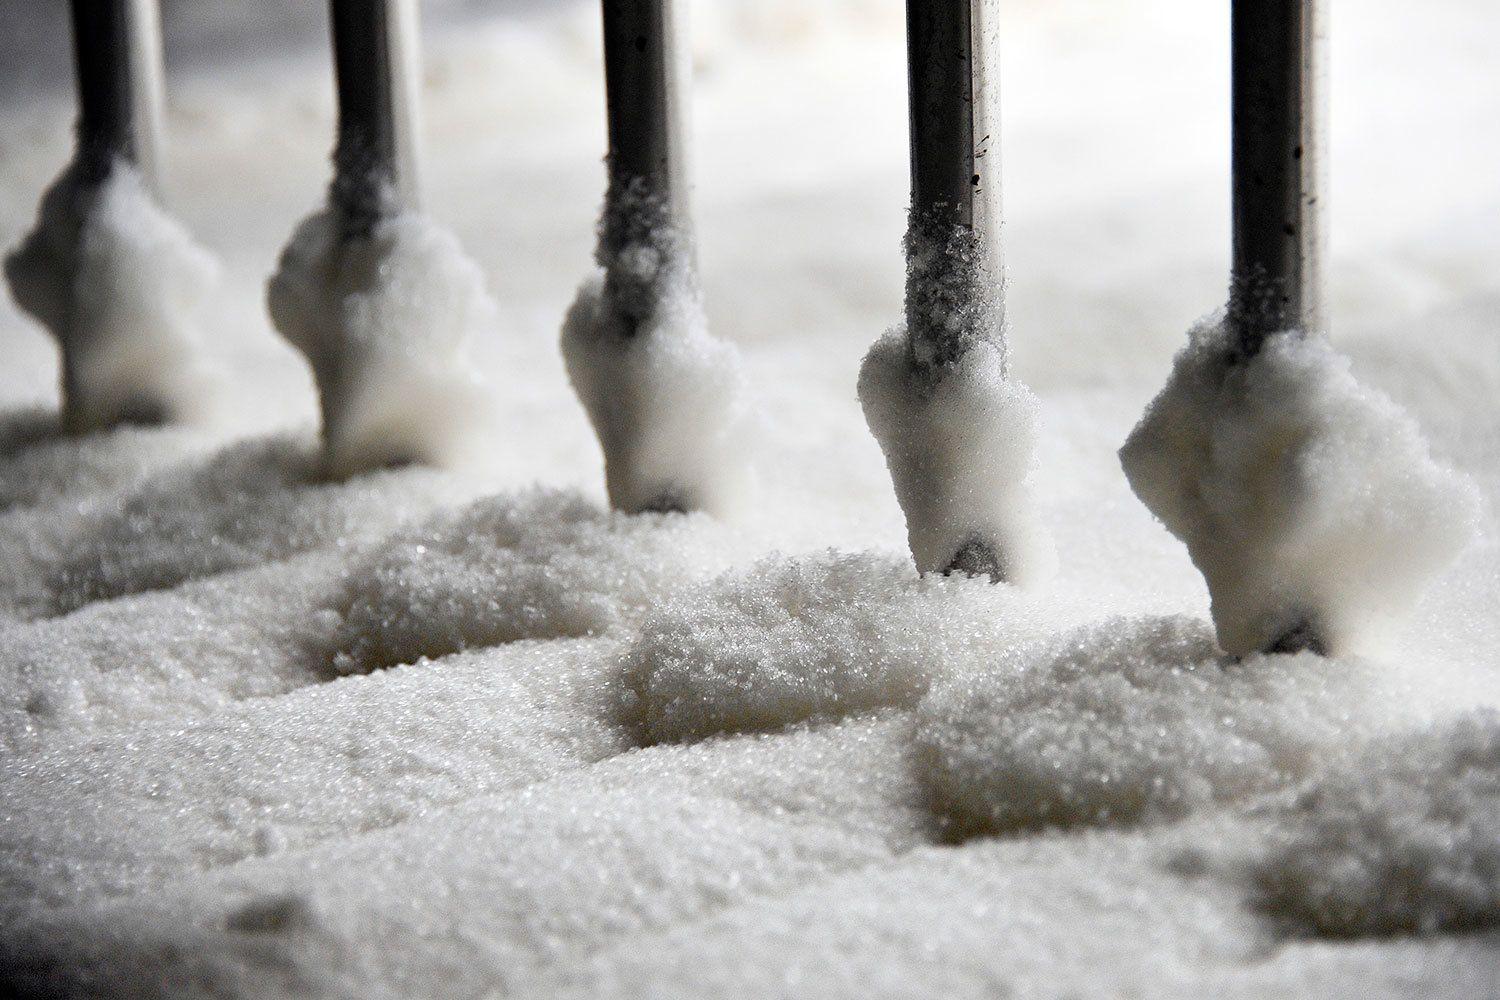 «Сахарный вопрос» грозит испортить торговые отношения в Евразийском союзе